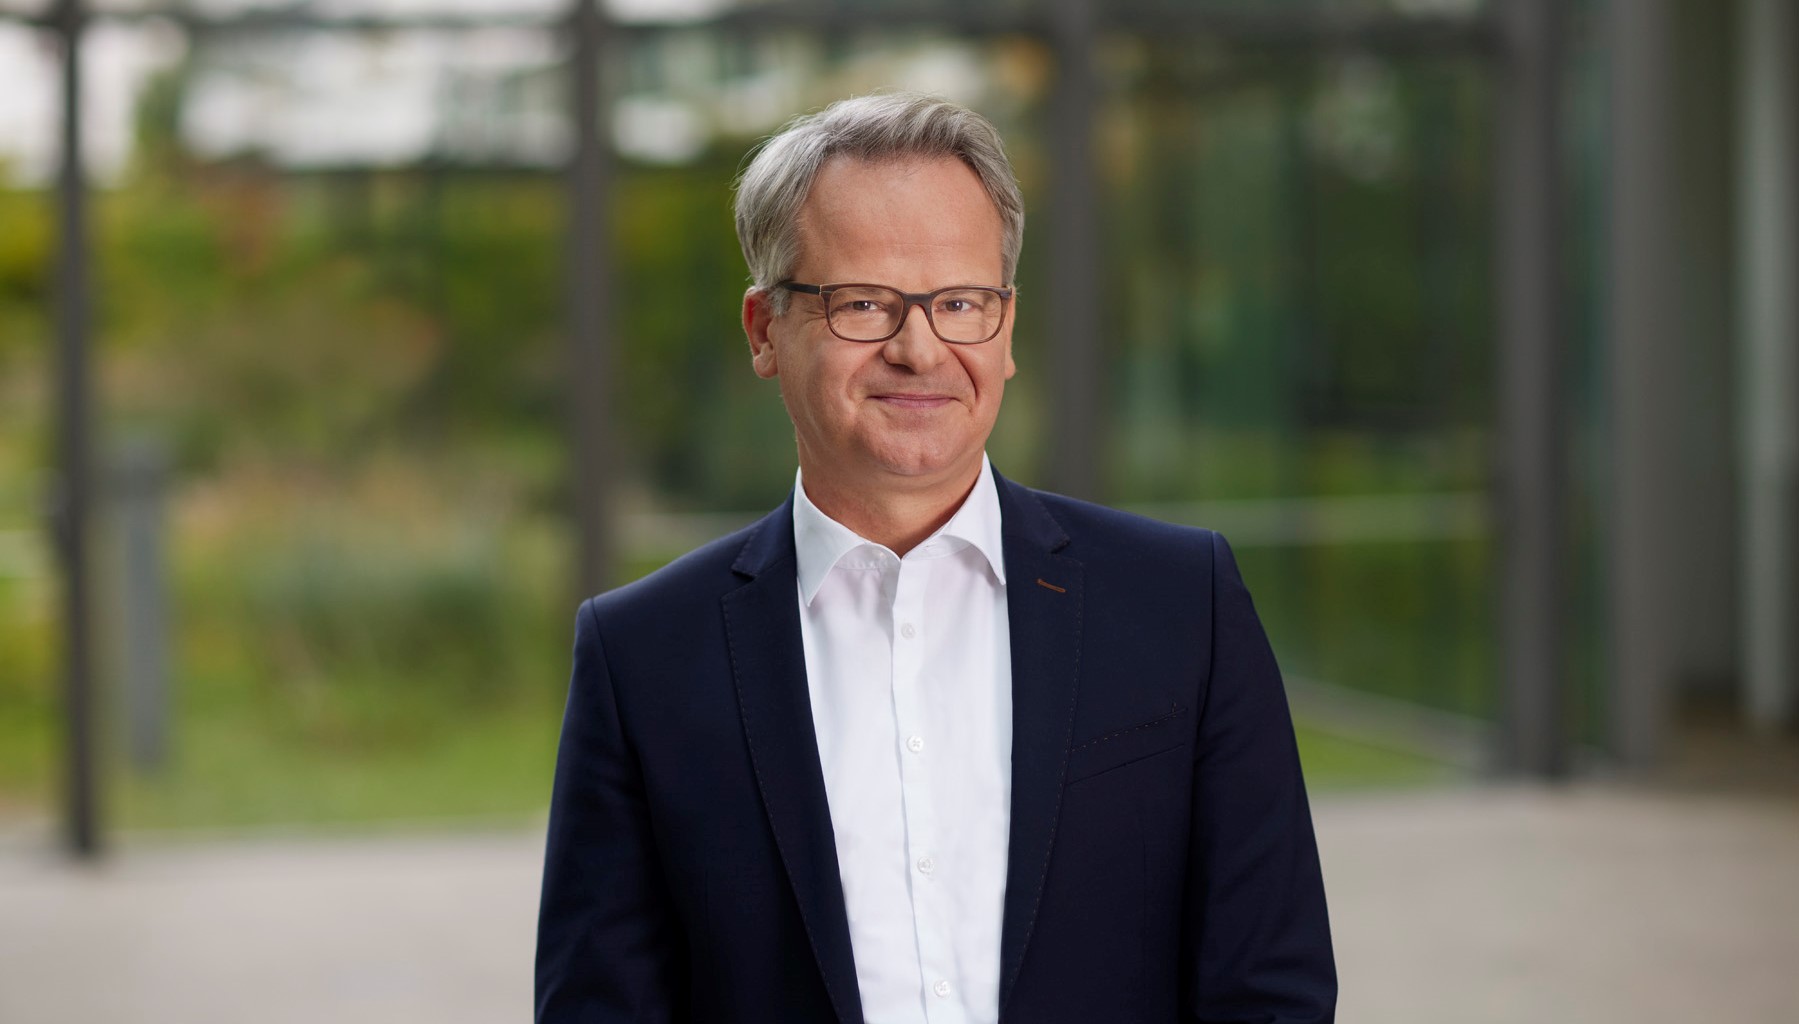 Referenzen: HypoVereinsbank Dr. Lars Jungemann